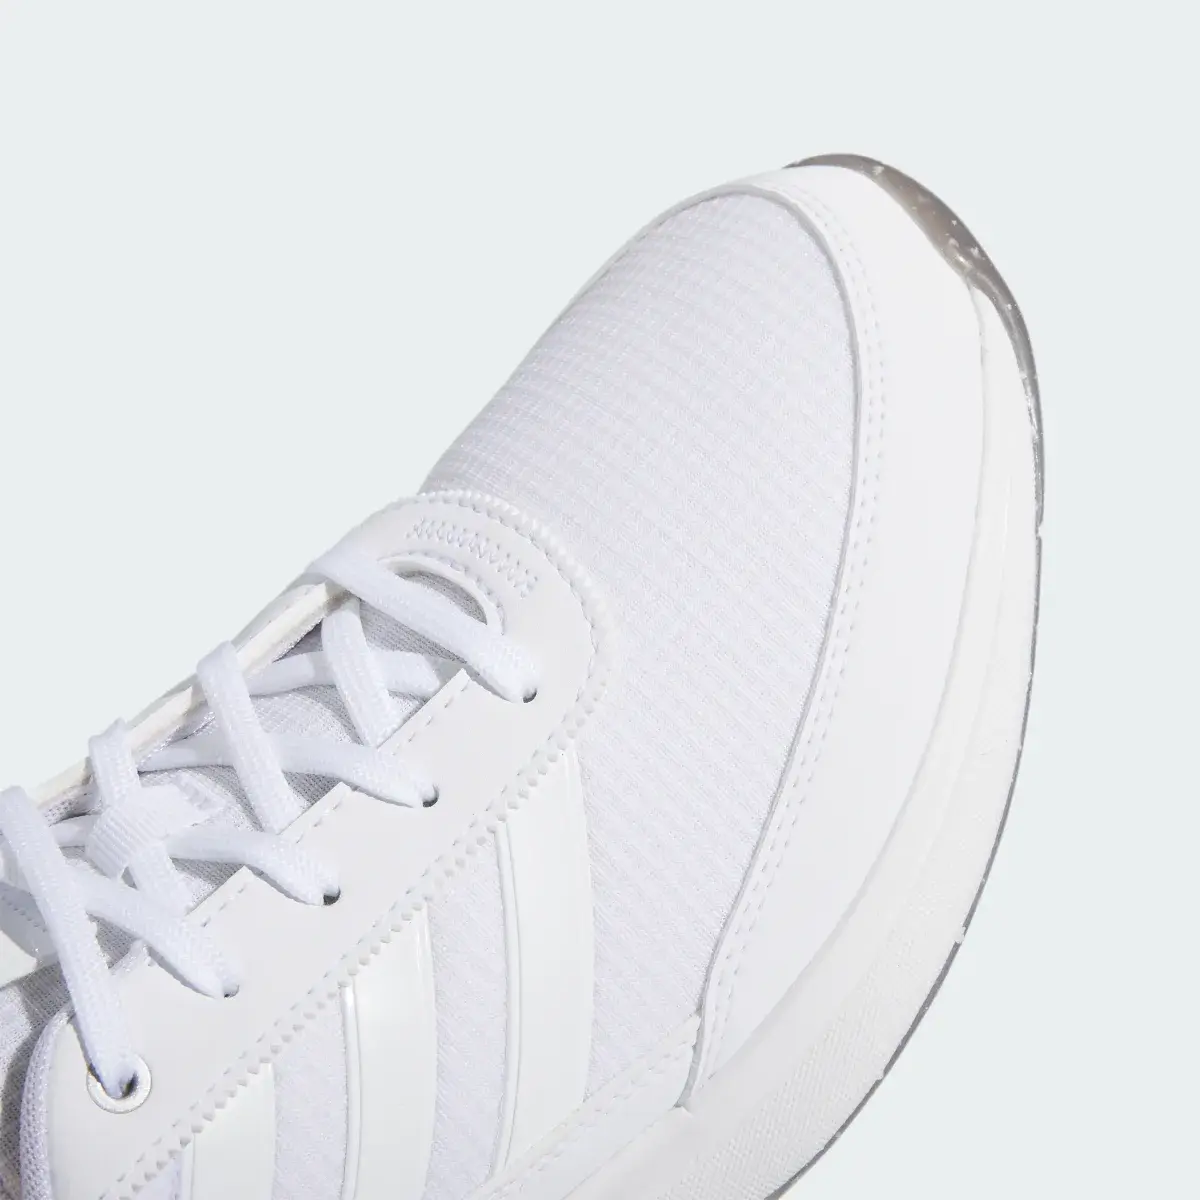 Adidas S2G 24 Spikeless Golf Shoes. 3